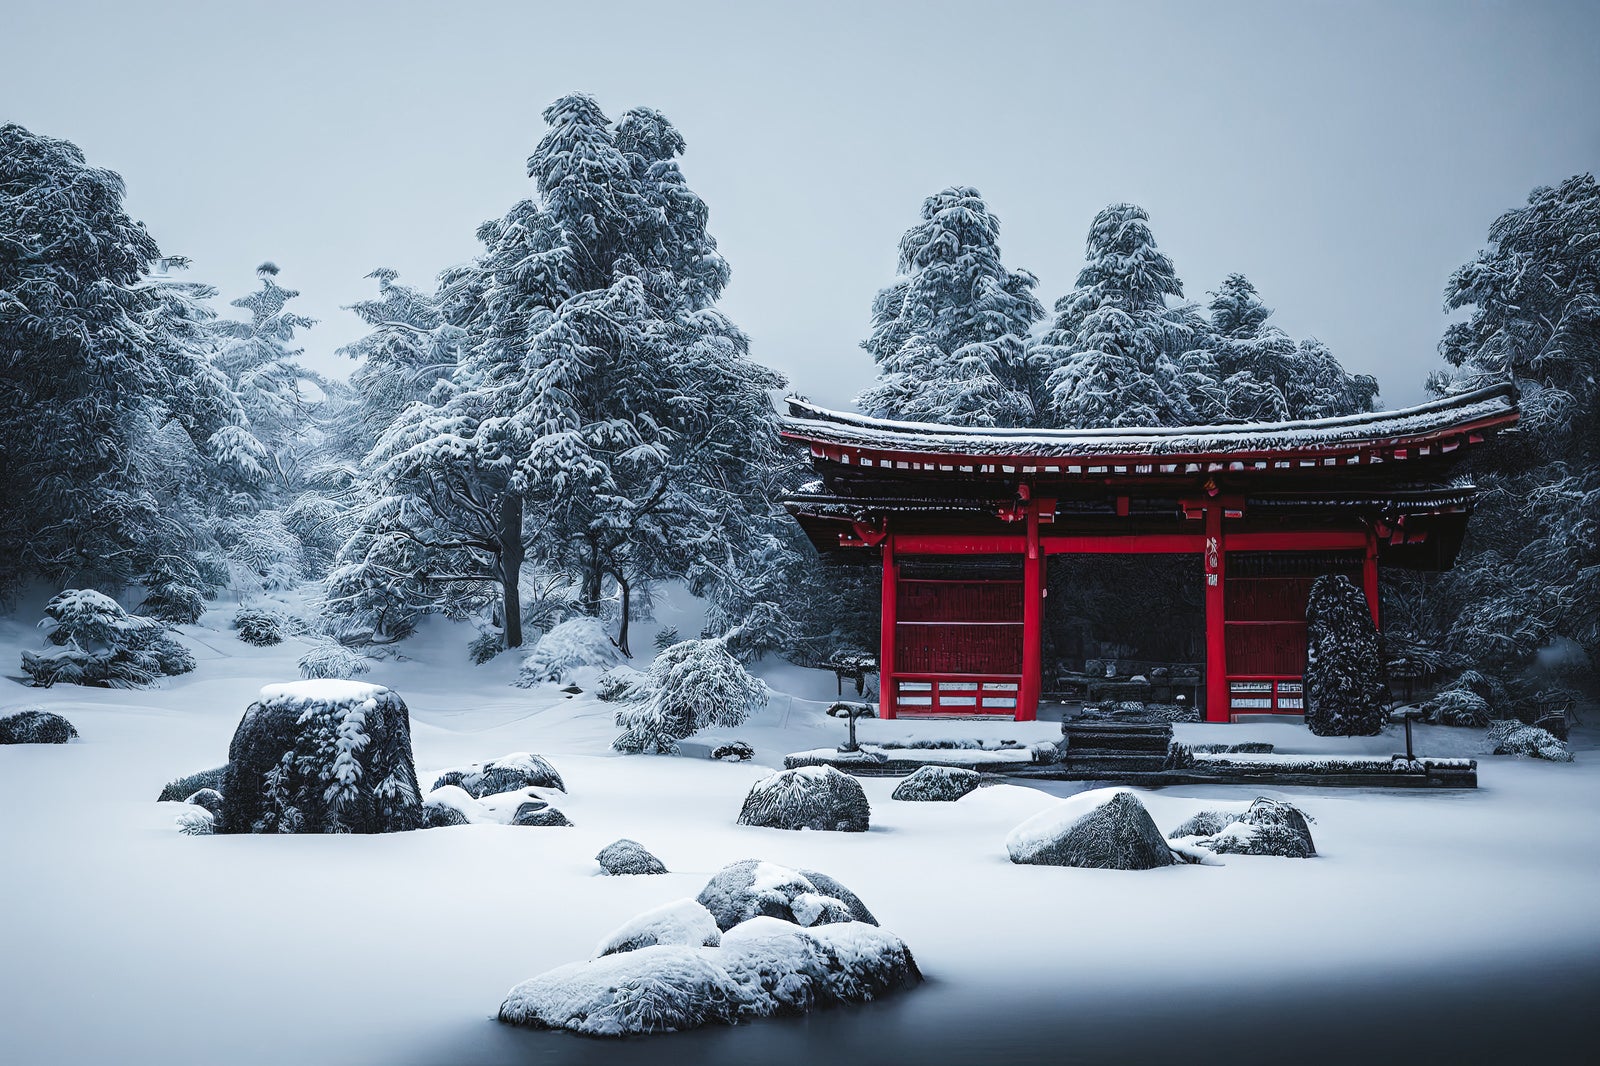 「雪が降り積もる静寂な寺院」の写真